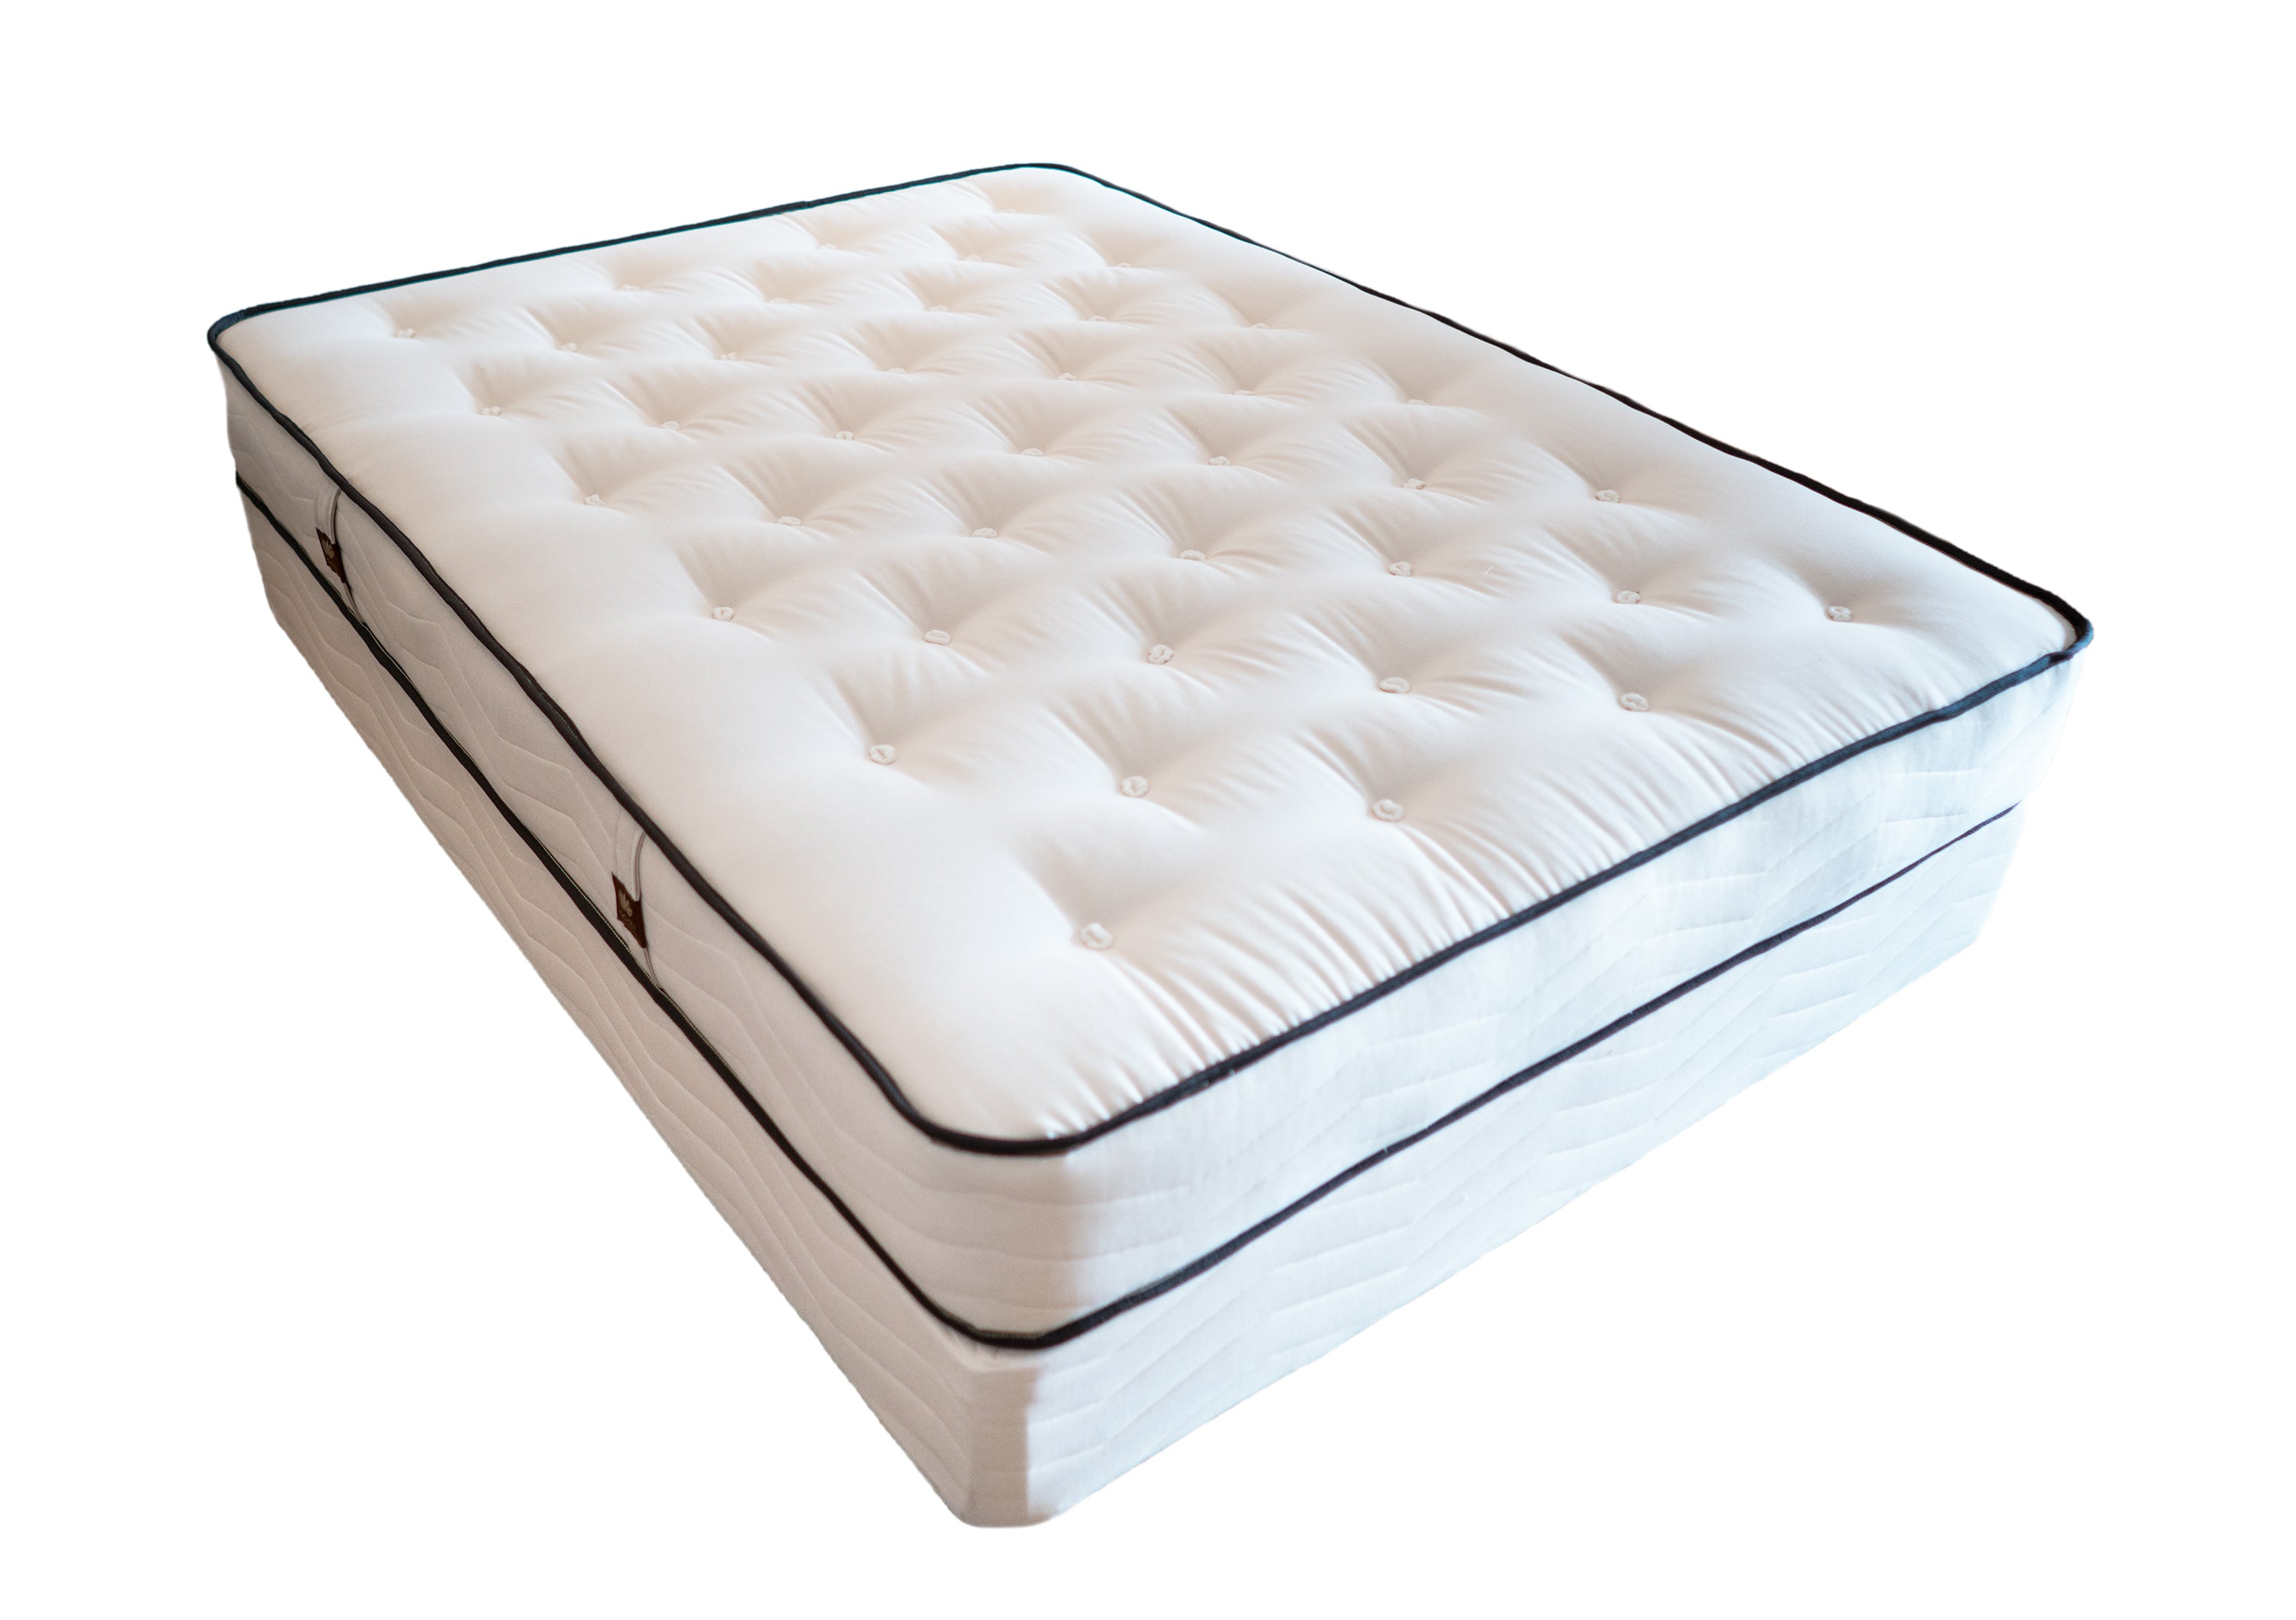 innerspring mattress sets review